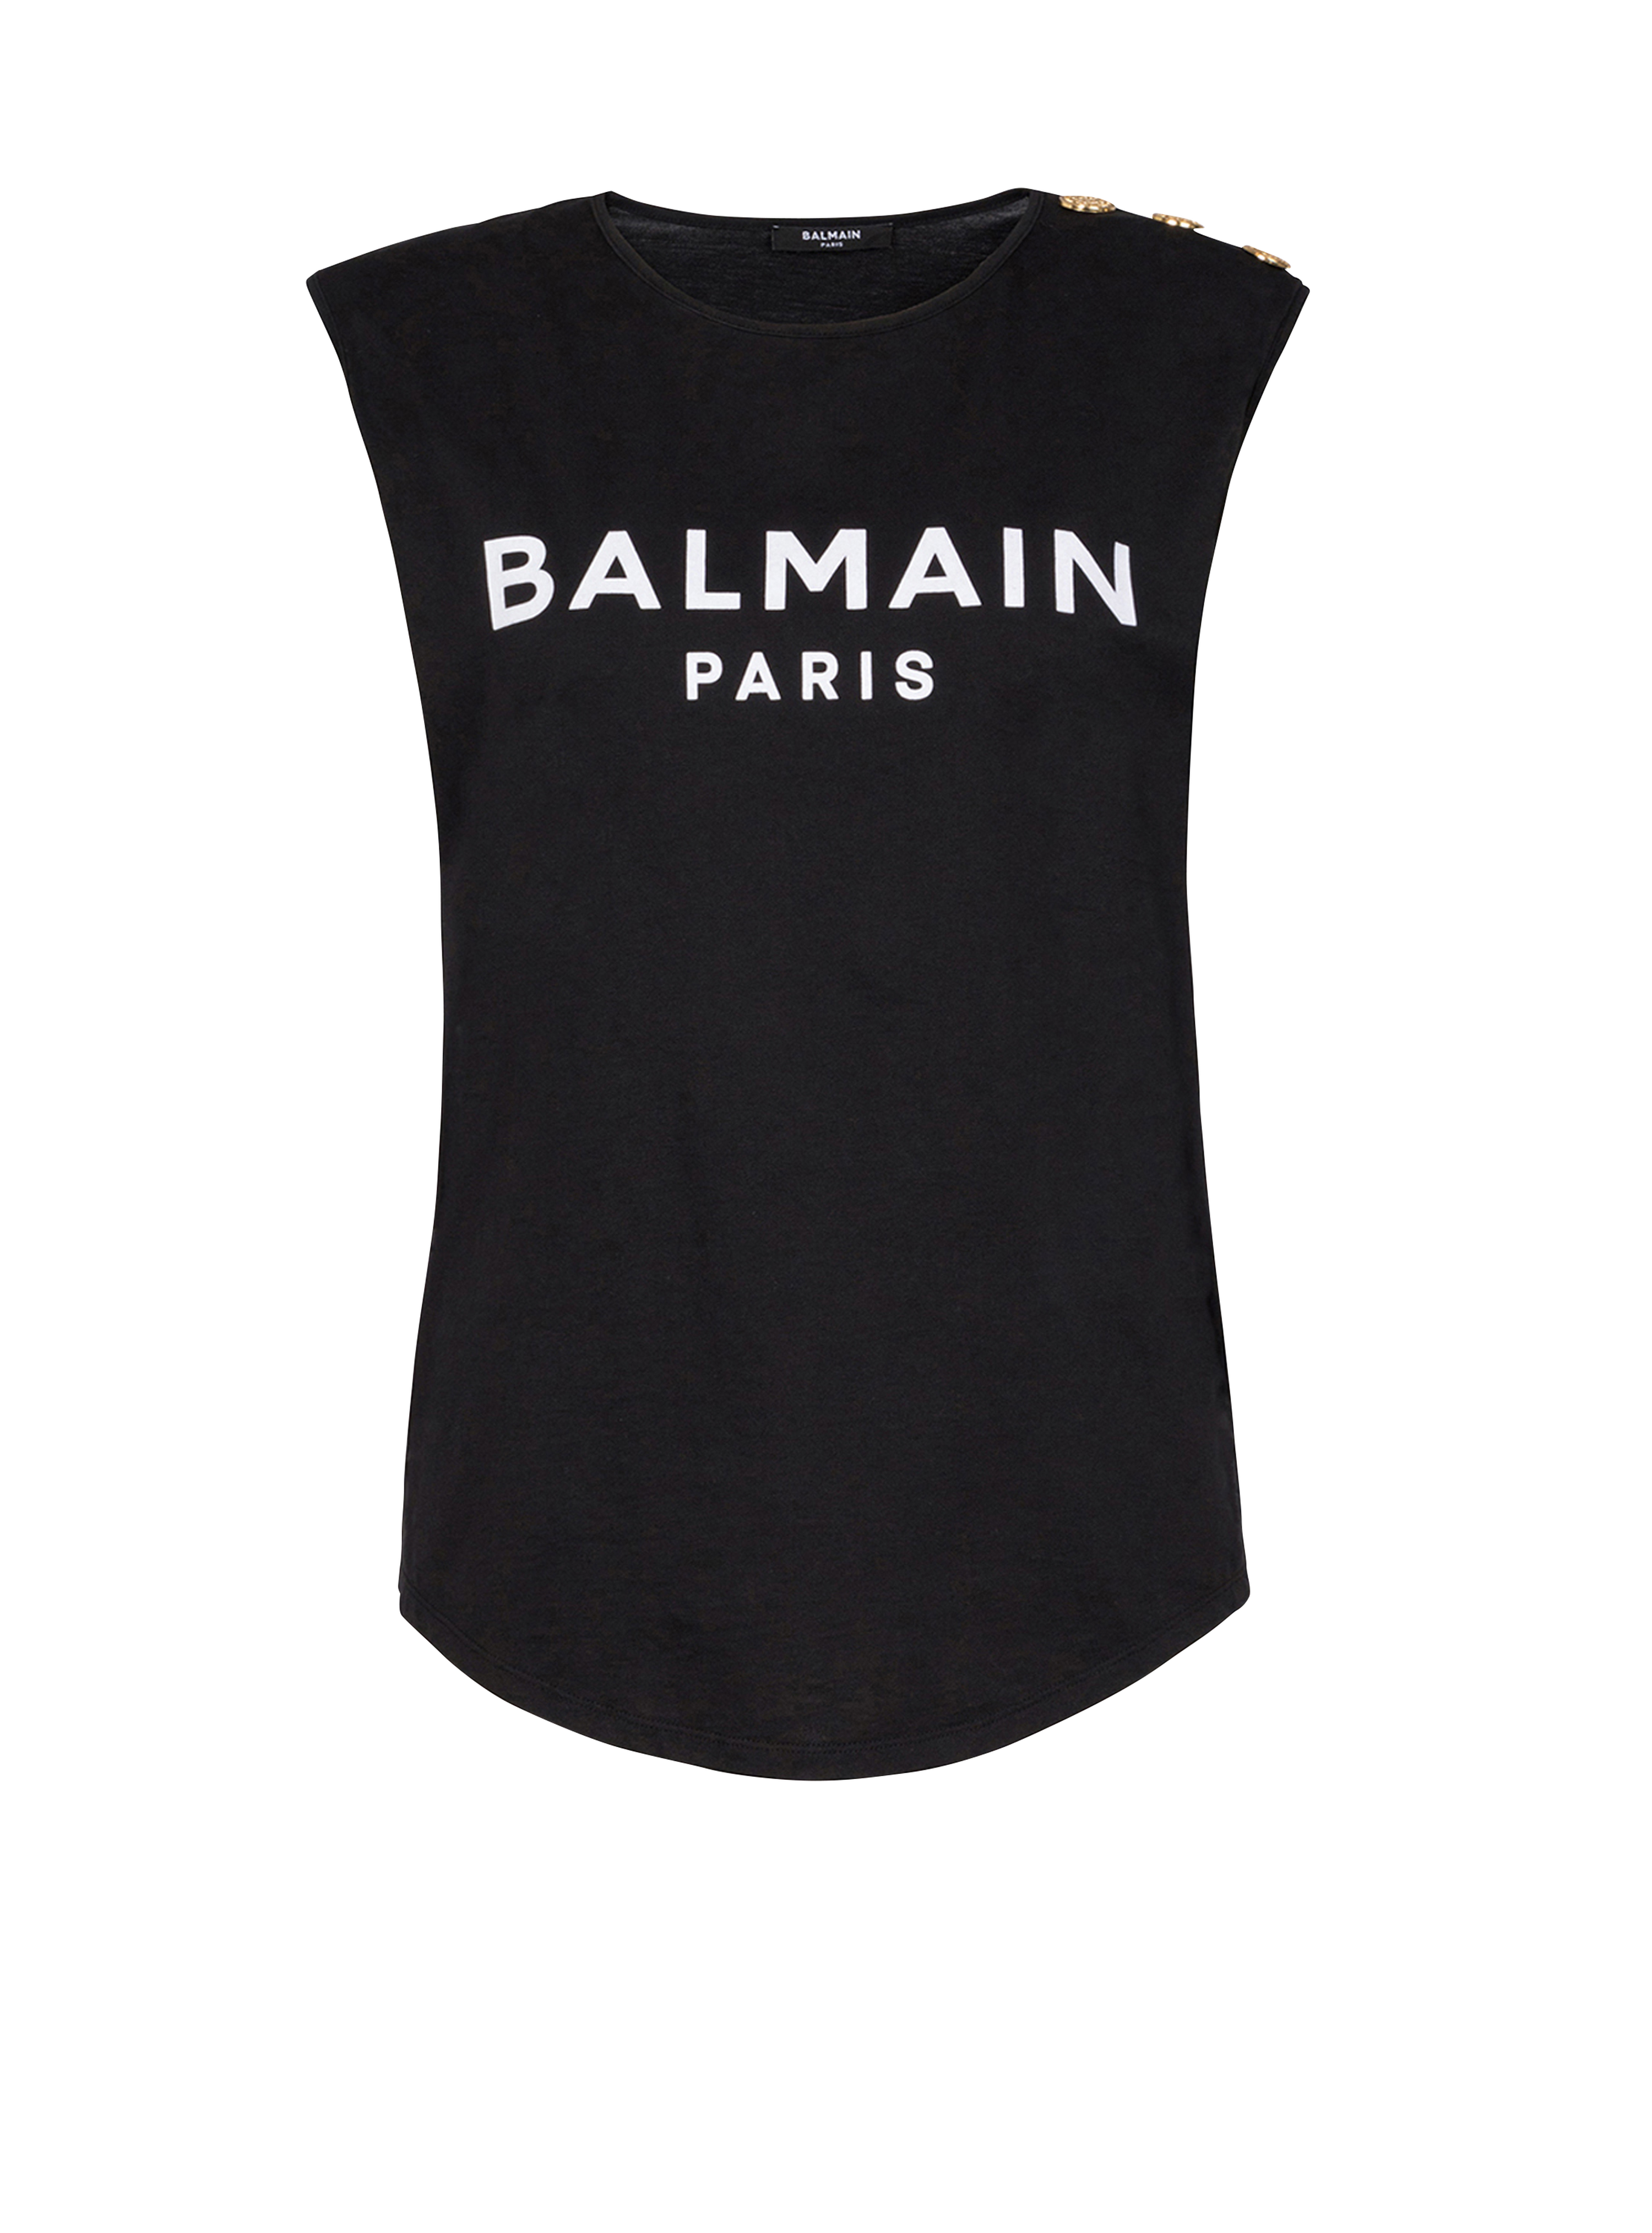 T-shirt in cotone con logo Balmain, nero